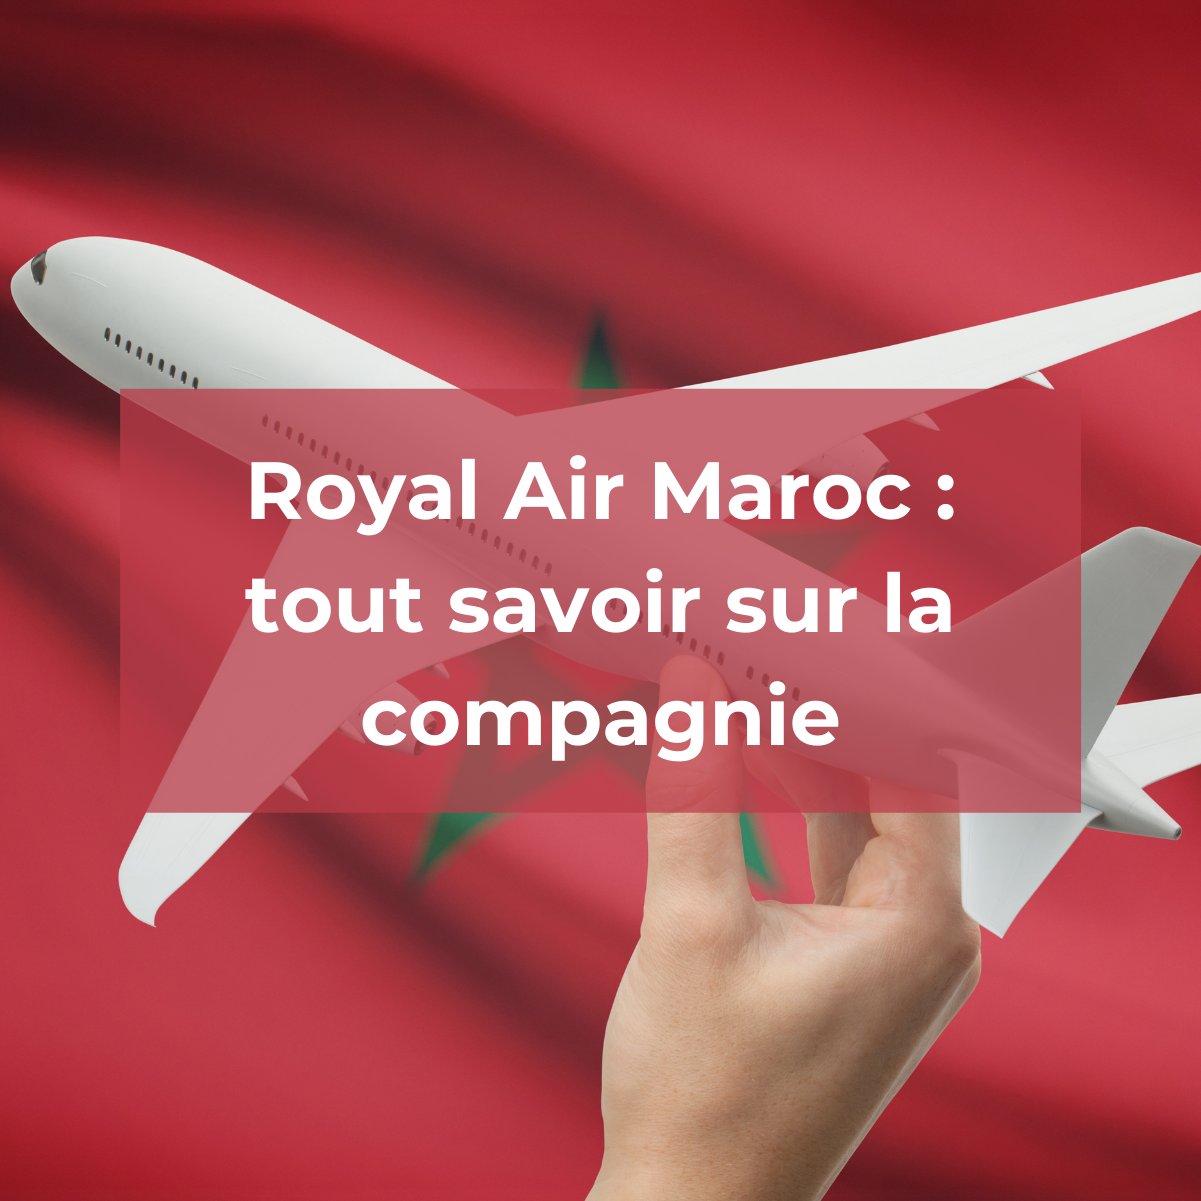 Royal Air Maroc : tout savoir sur la compagnie